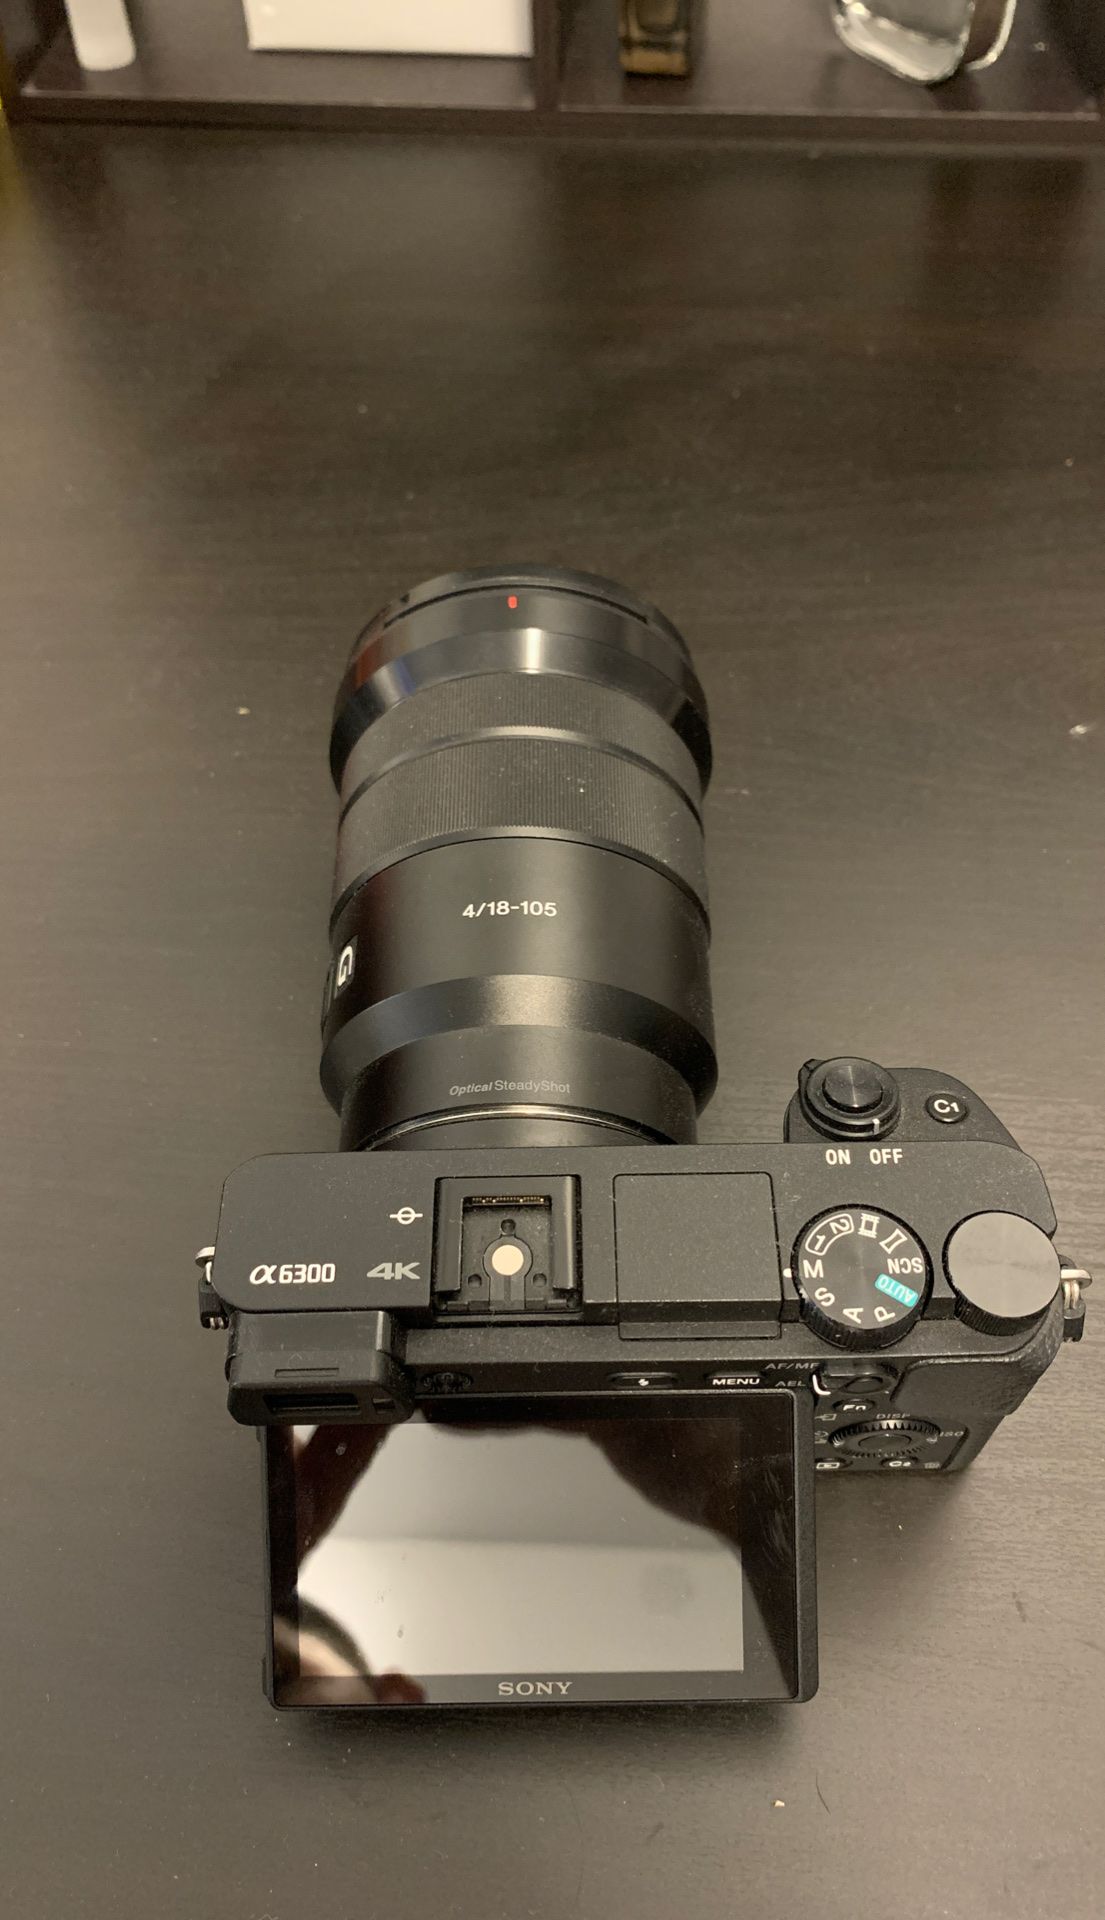 SONY “A6300” w/ 18-105 f4 Lens